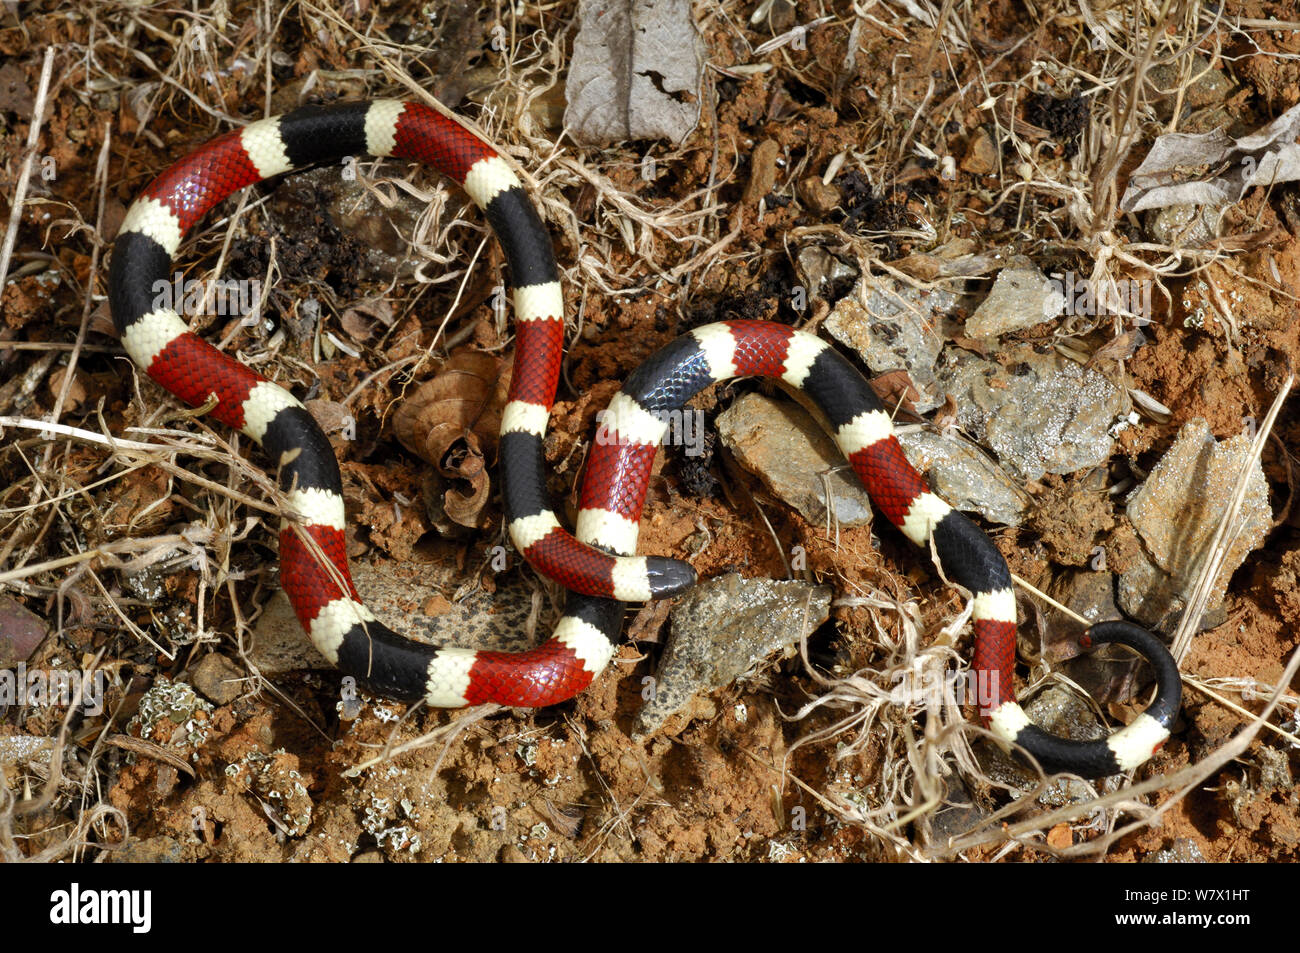 Arizona coral snake (Micruroides euryxanthus) Santa Catalina mountains, Arizona, USA. Stock Photo